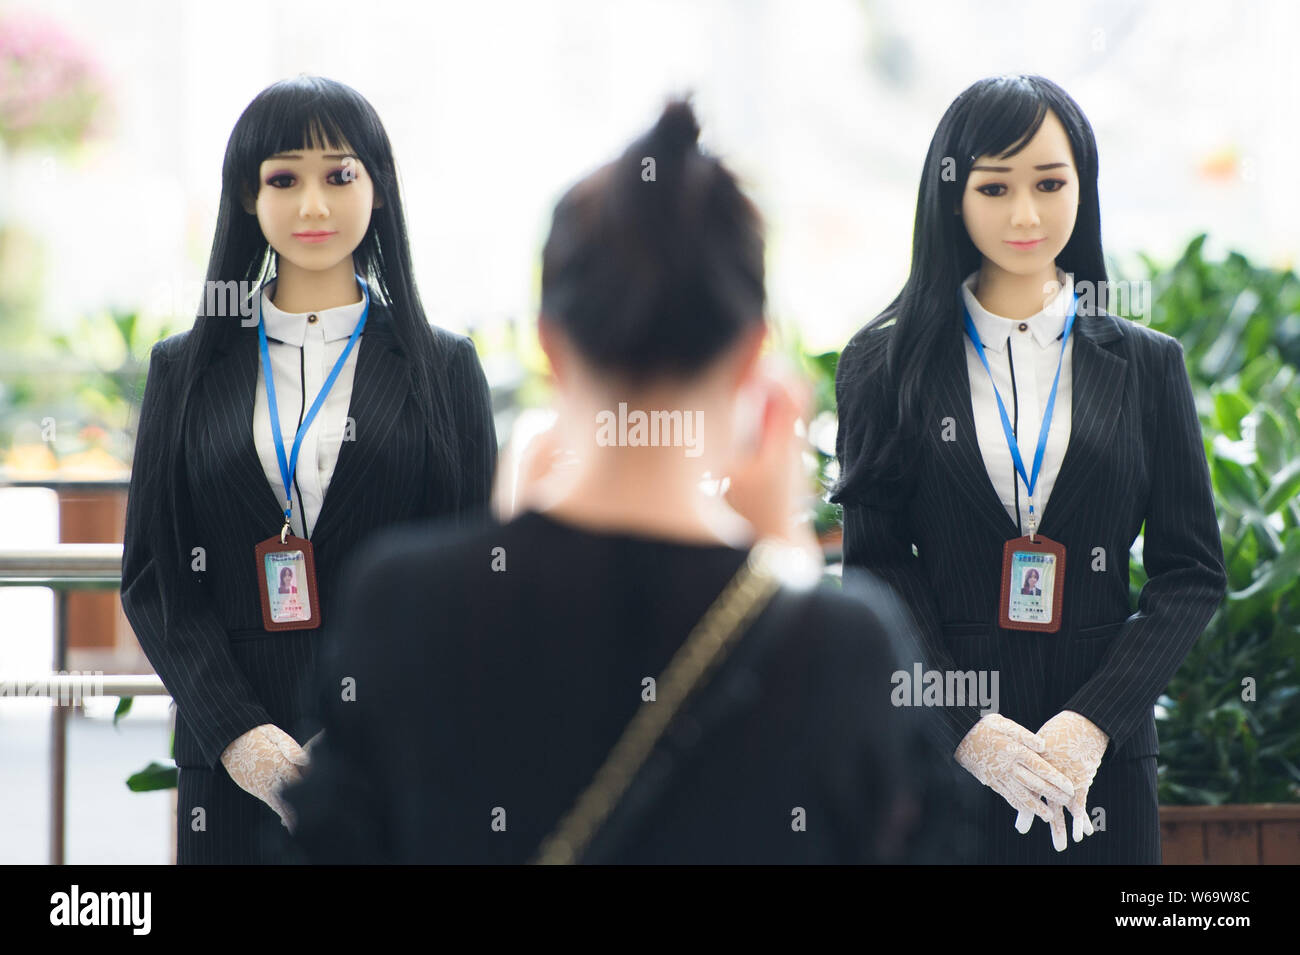 Un passager prend des photos de robots humanoïdes utilisés pour sensibiliser le public à la lutte contre la drogue s'affiche sur la Journée internationale contre l'abus et Illi Banque D'Images